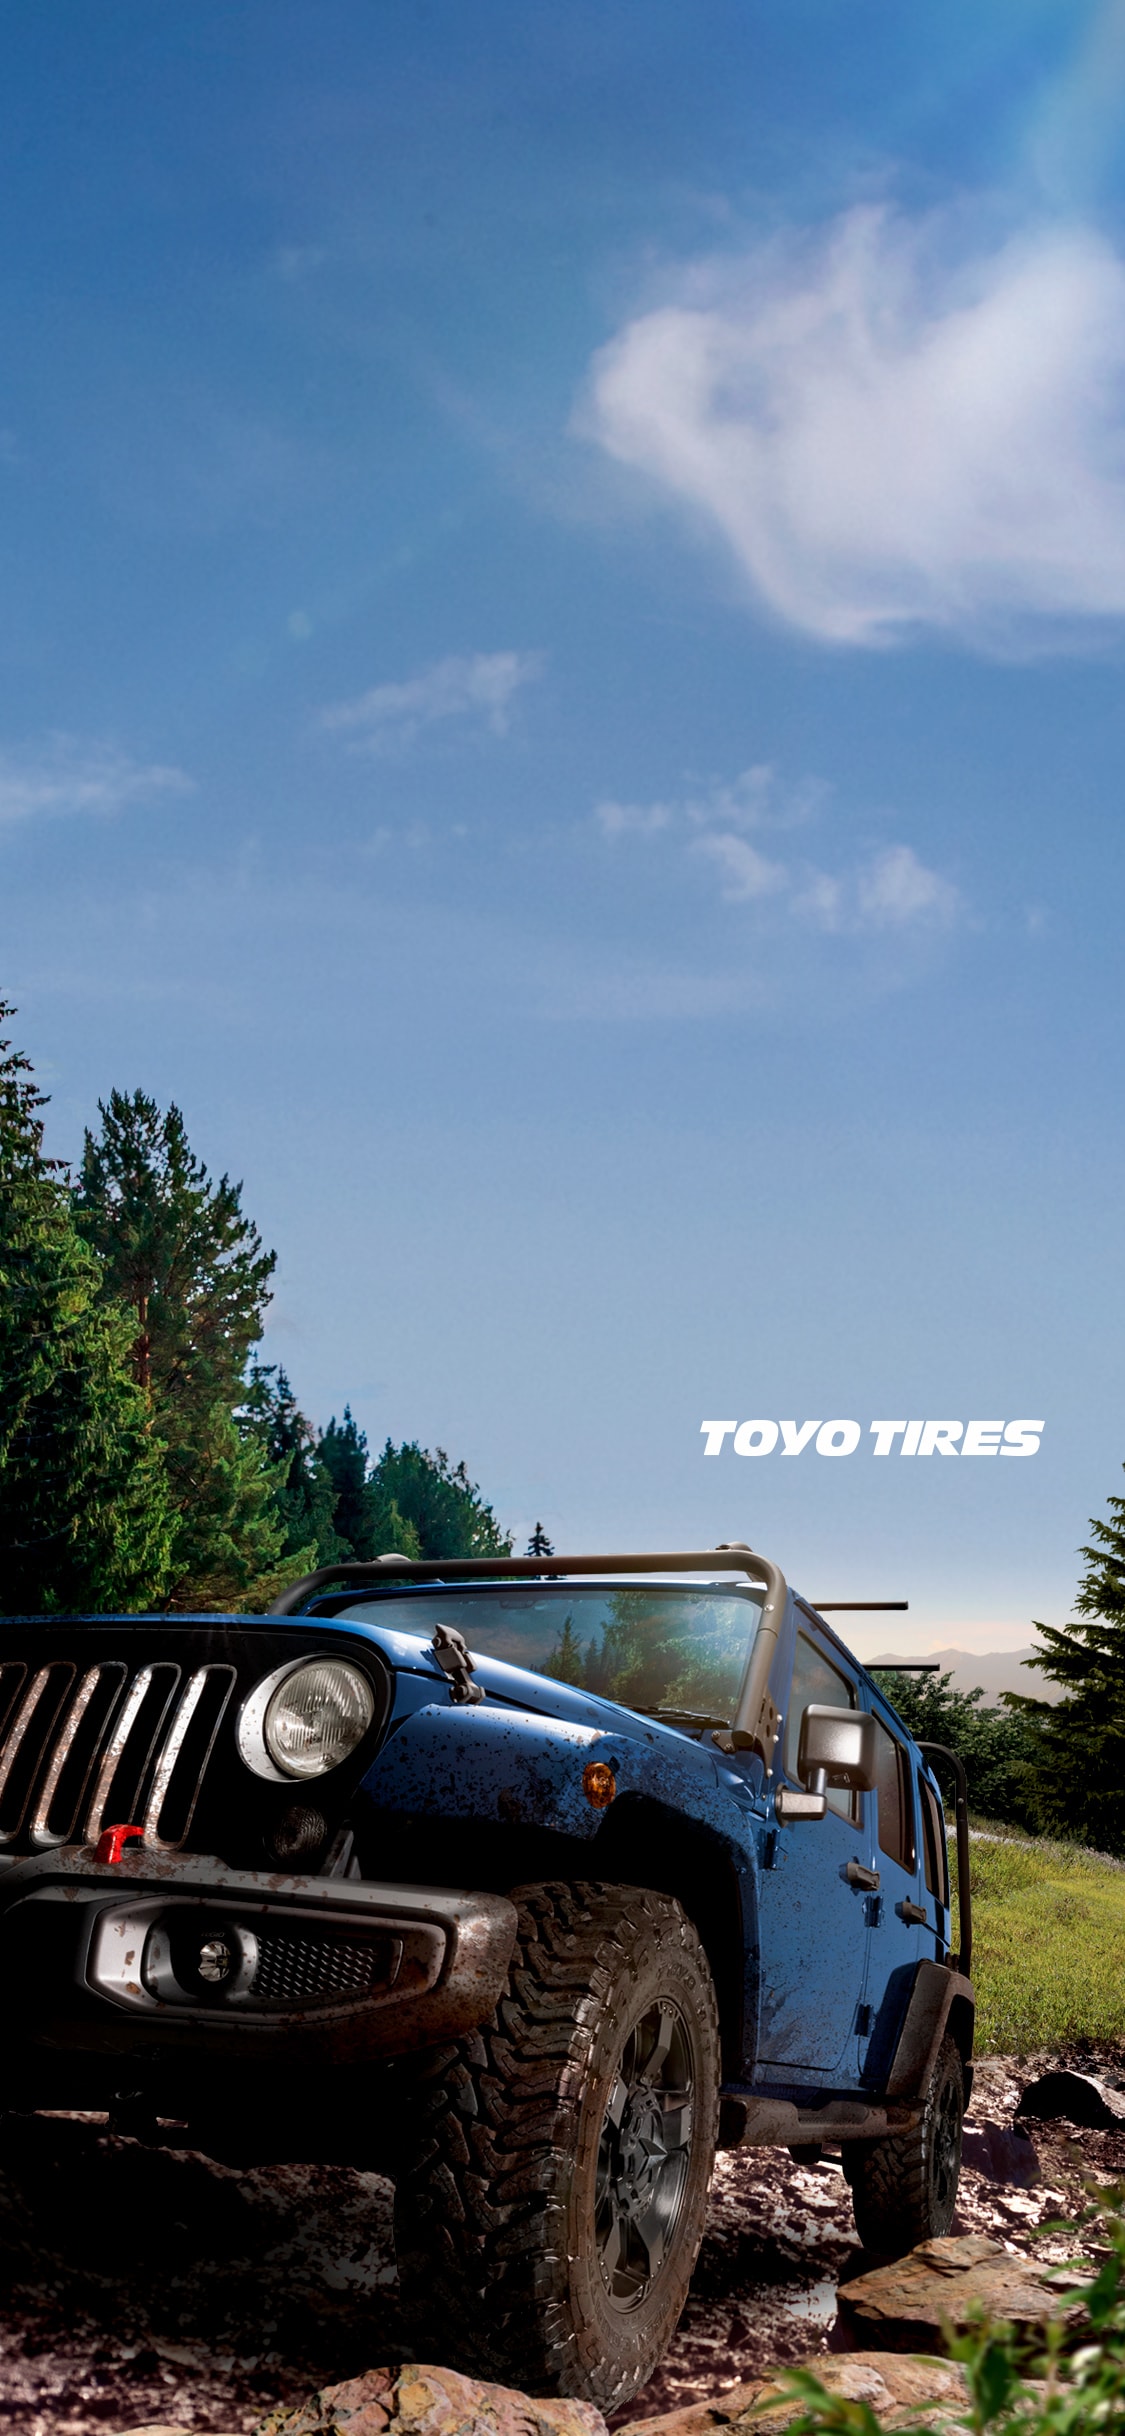 Toyo Tires オリジナル壁紙 カレンダー ギャラリー Toyo Tires トーヨータイヤ 企業サイト